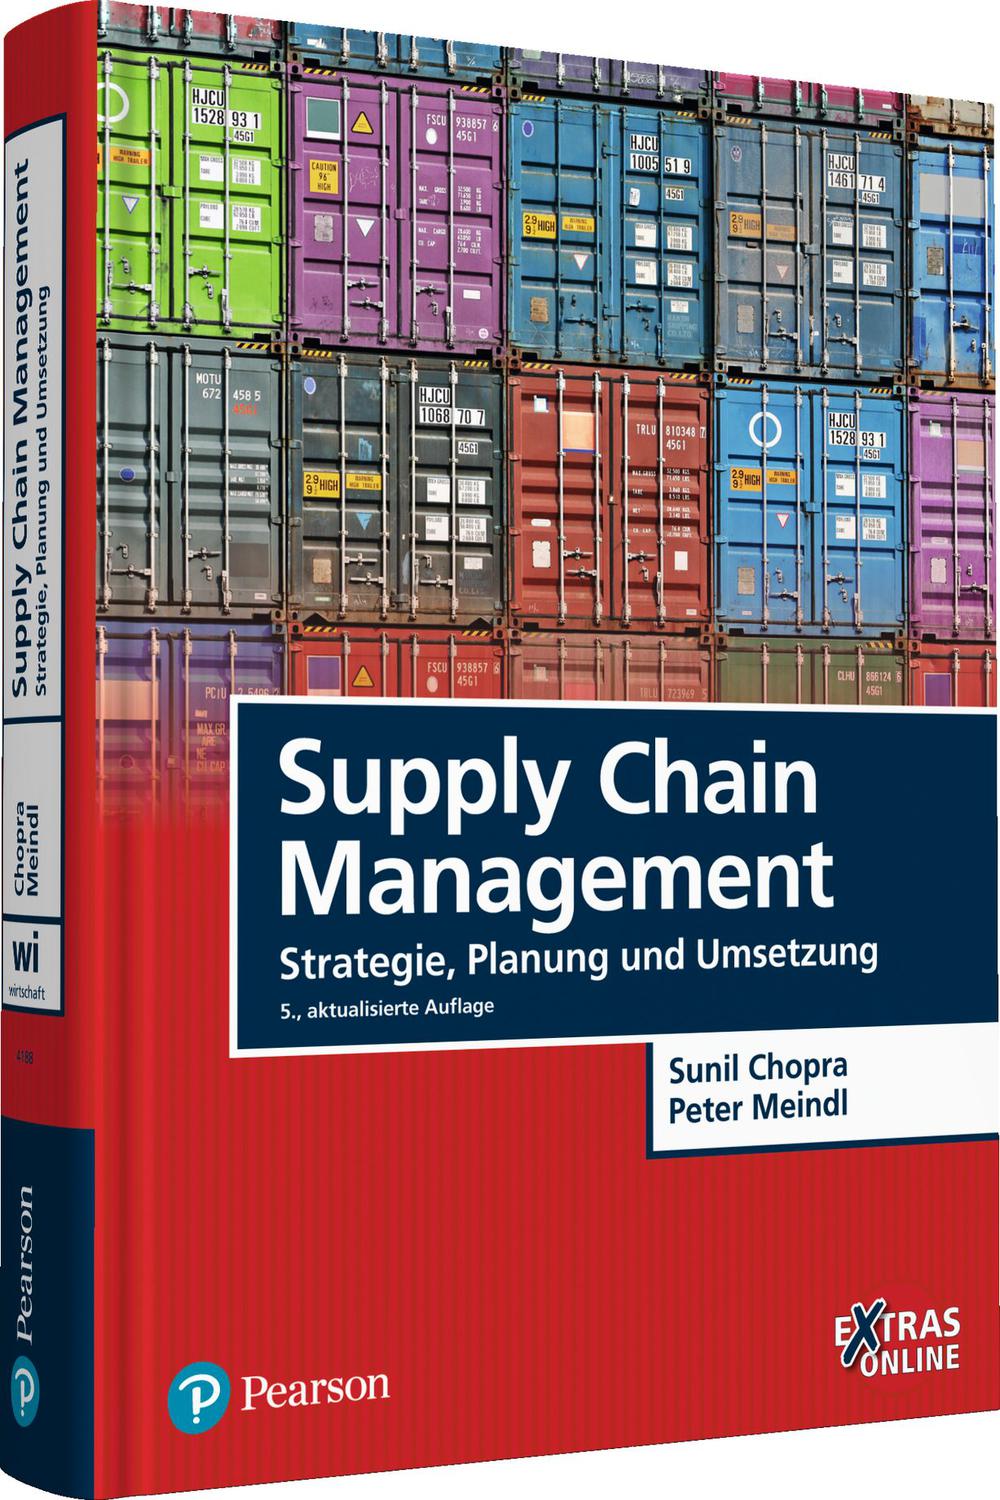 Supply Chain Management - Sunil Chopra, Peter Meindl,,